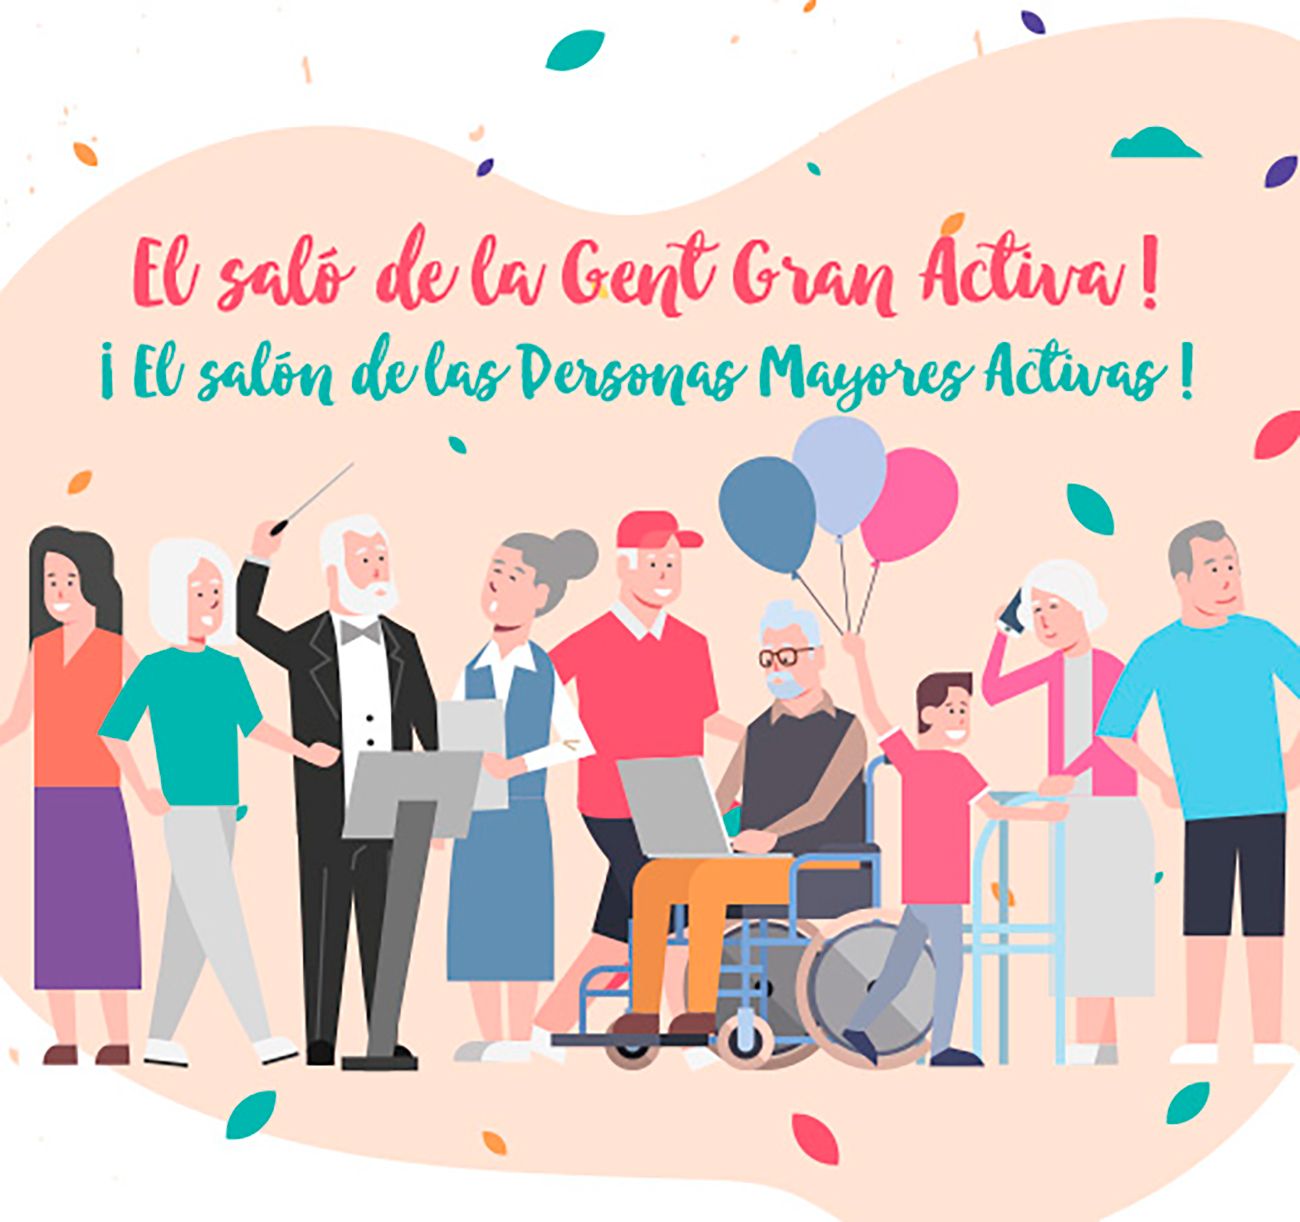 Destacada participación de ORPEA en Fira Gran 2019, el salón de las personas mayores de Cataluña